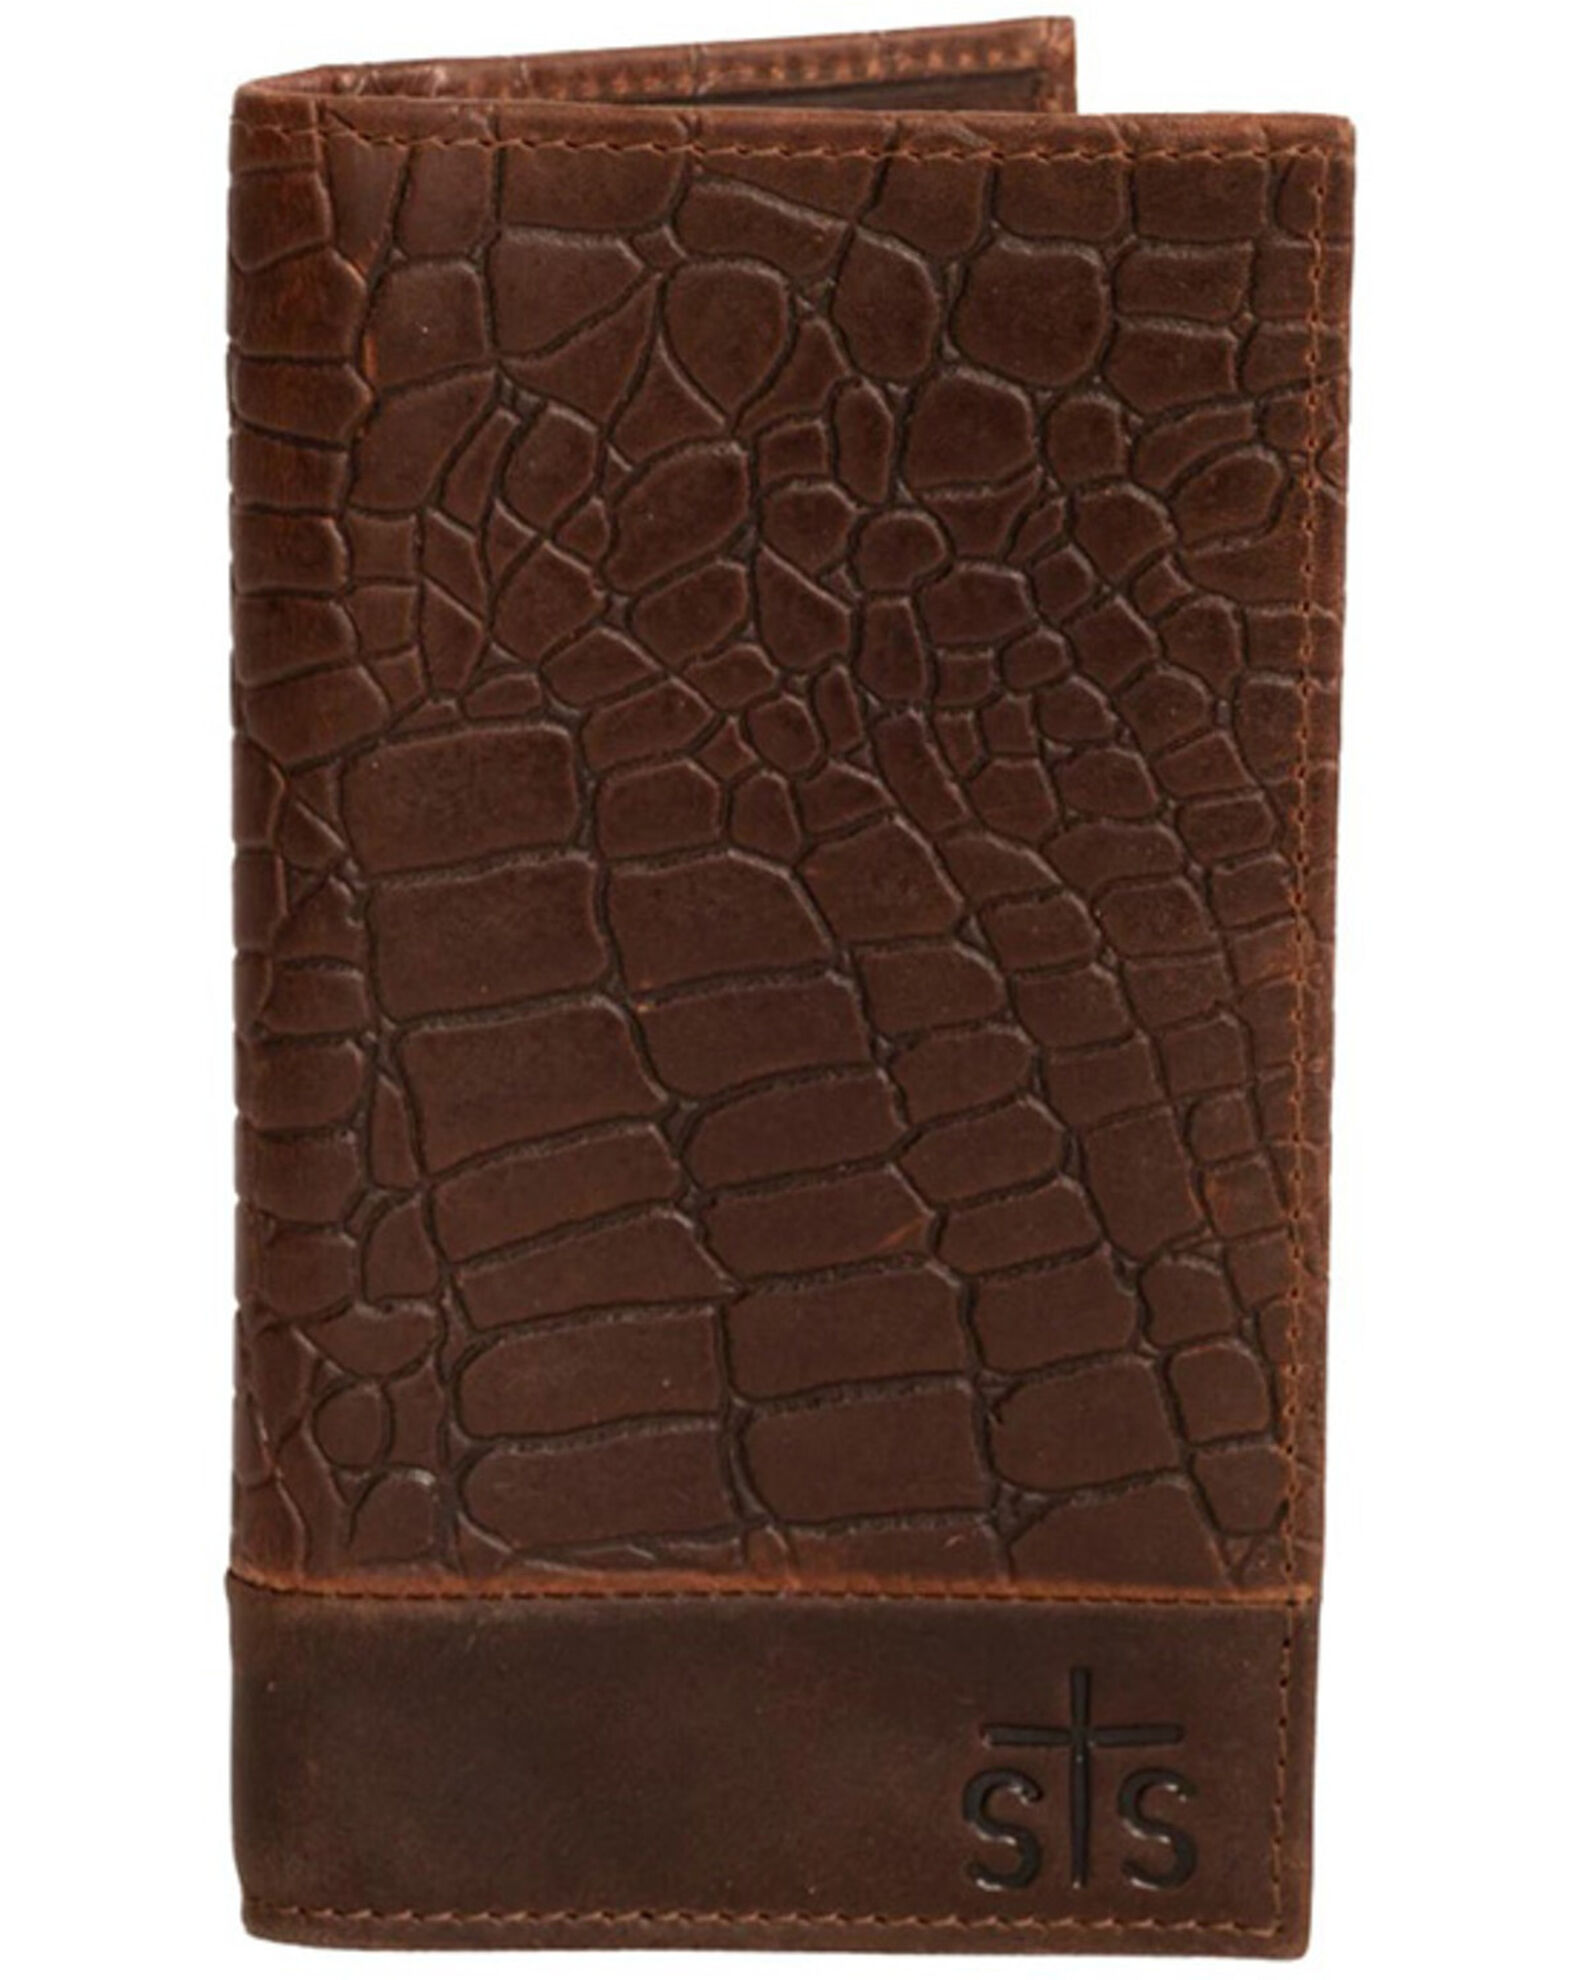 STS Ranchwear by Carroll Men's Croc Long Bi-Fold Wallet